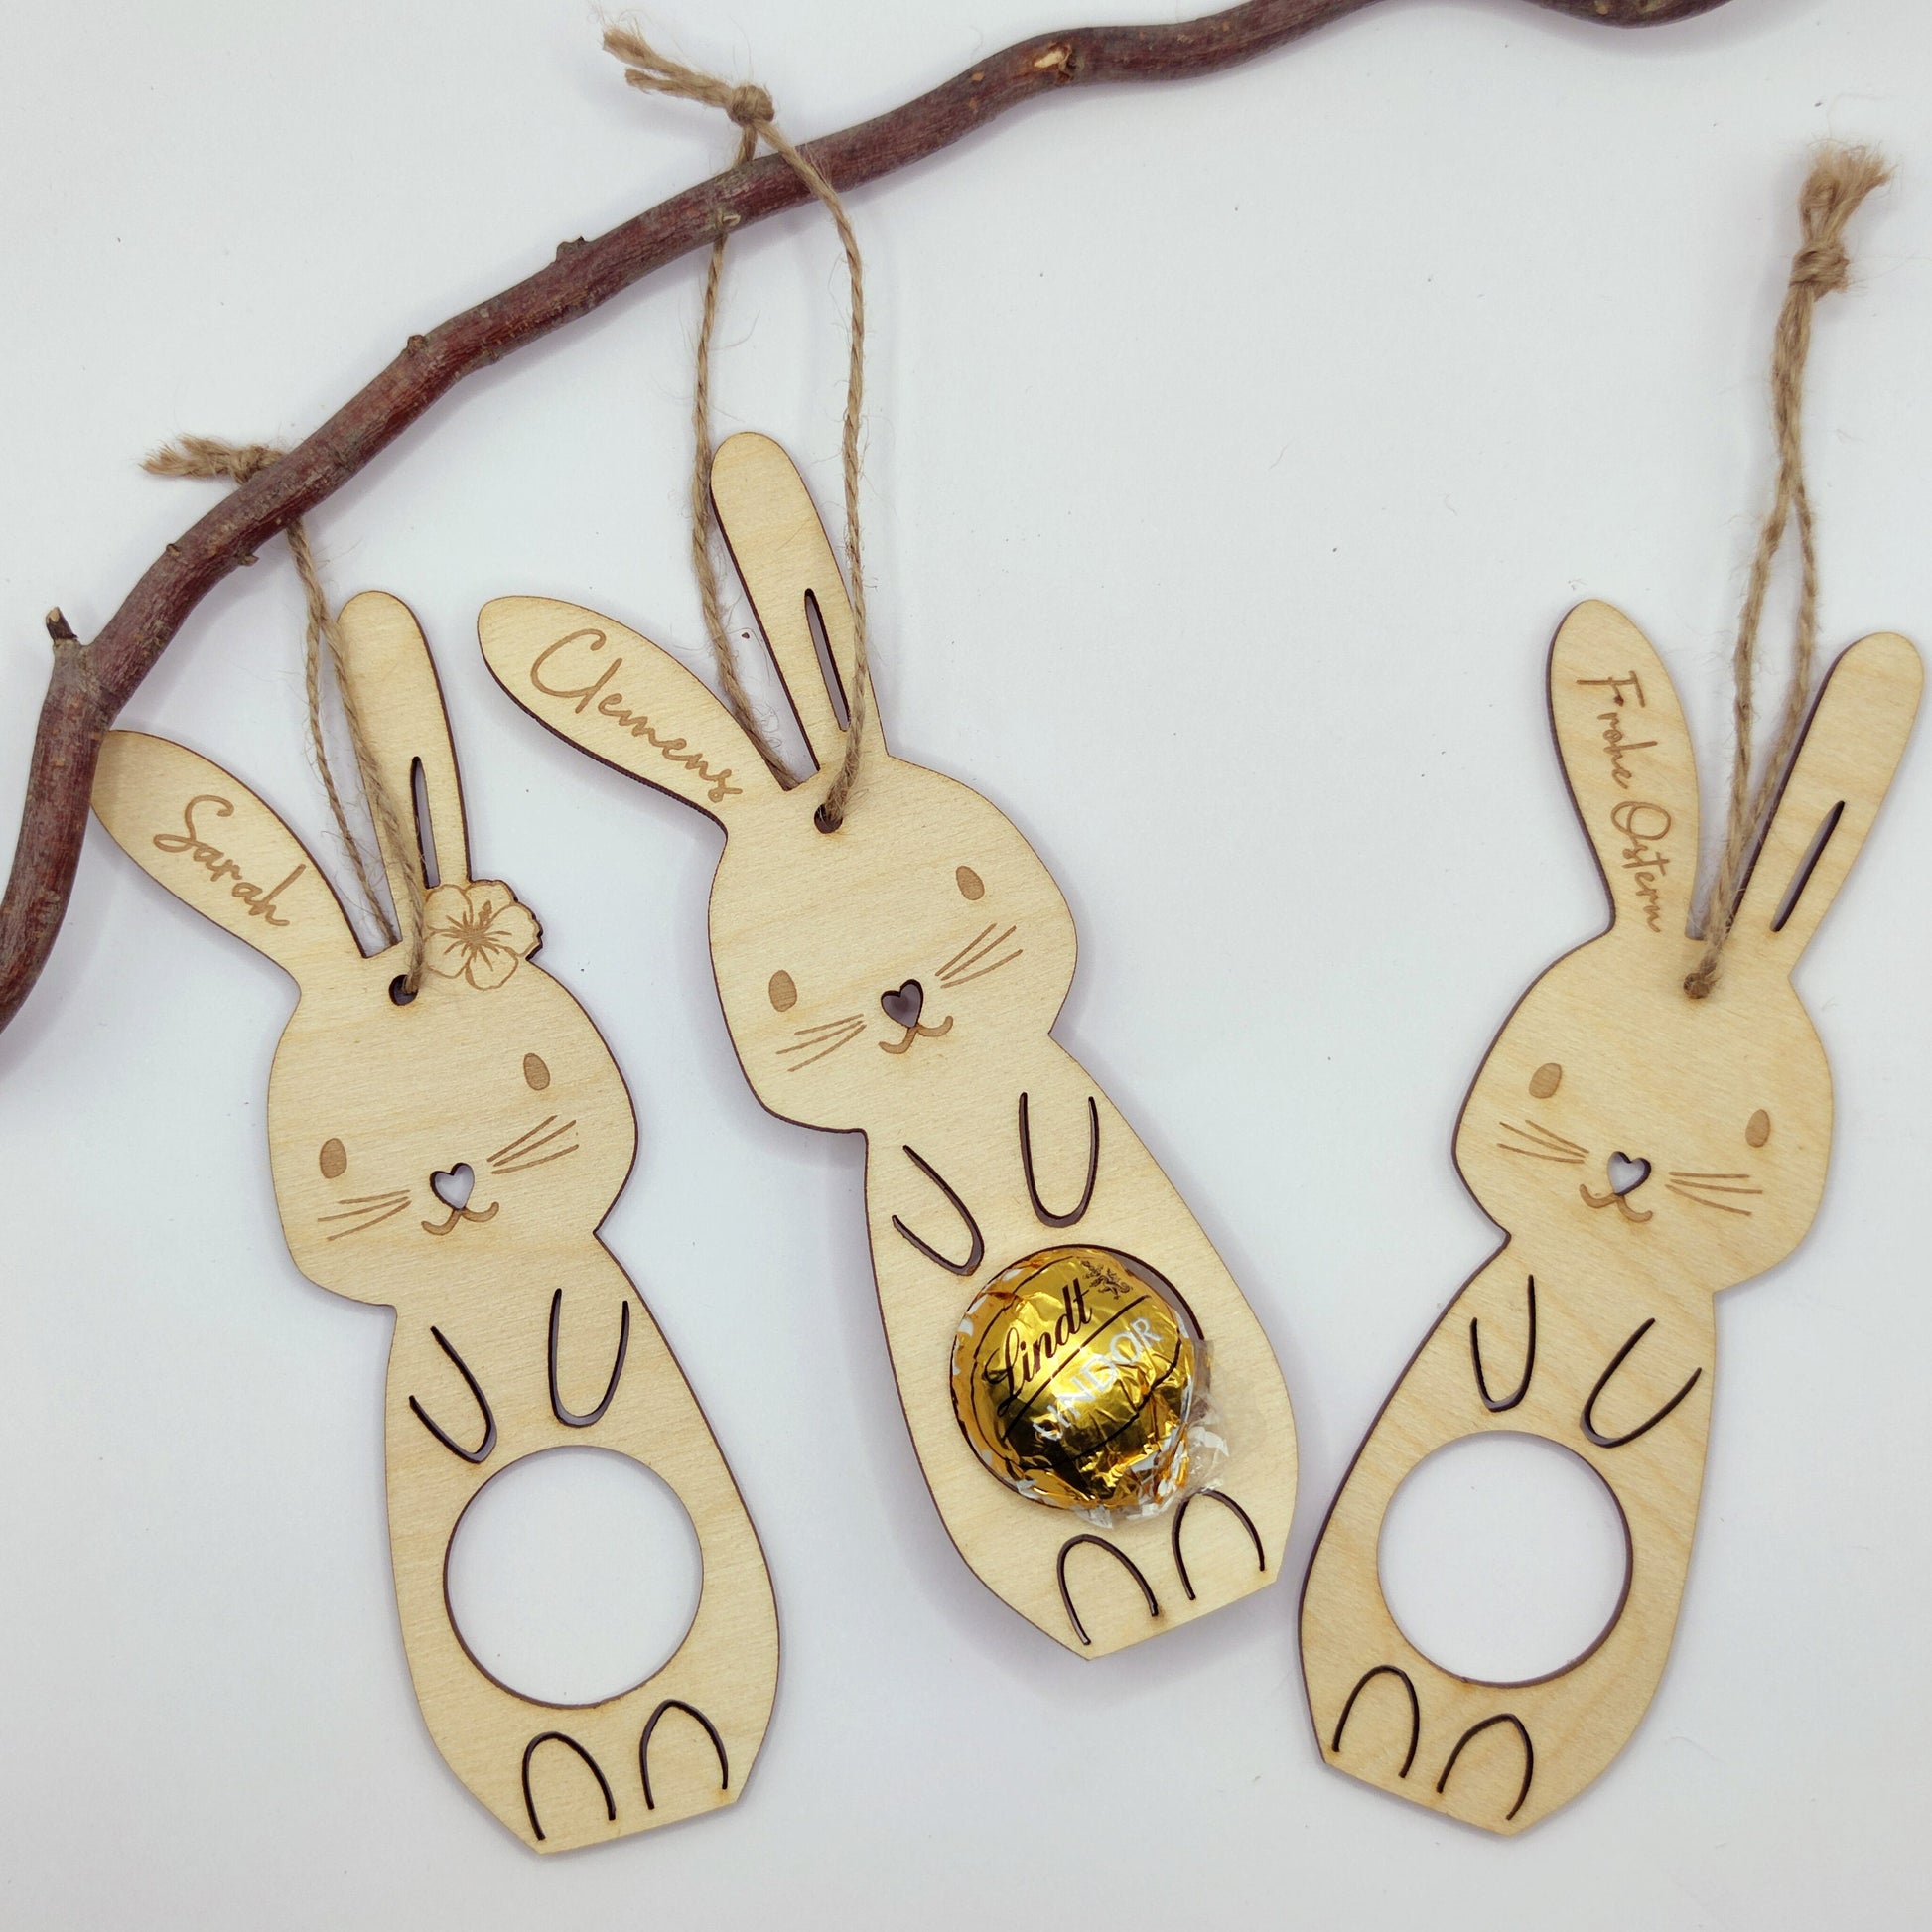 Osteranhänger personalisiert für Schoko-Ei, Ostergeschenk Kinder - Personalisierte Geschenke | Geschenkhaltig